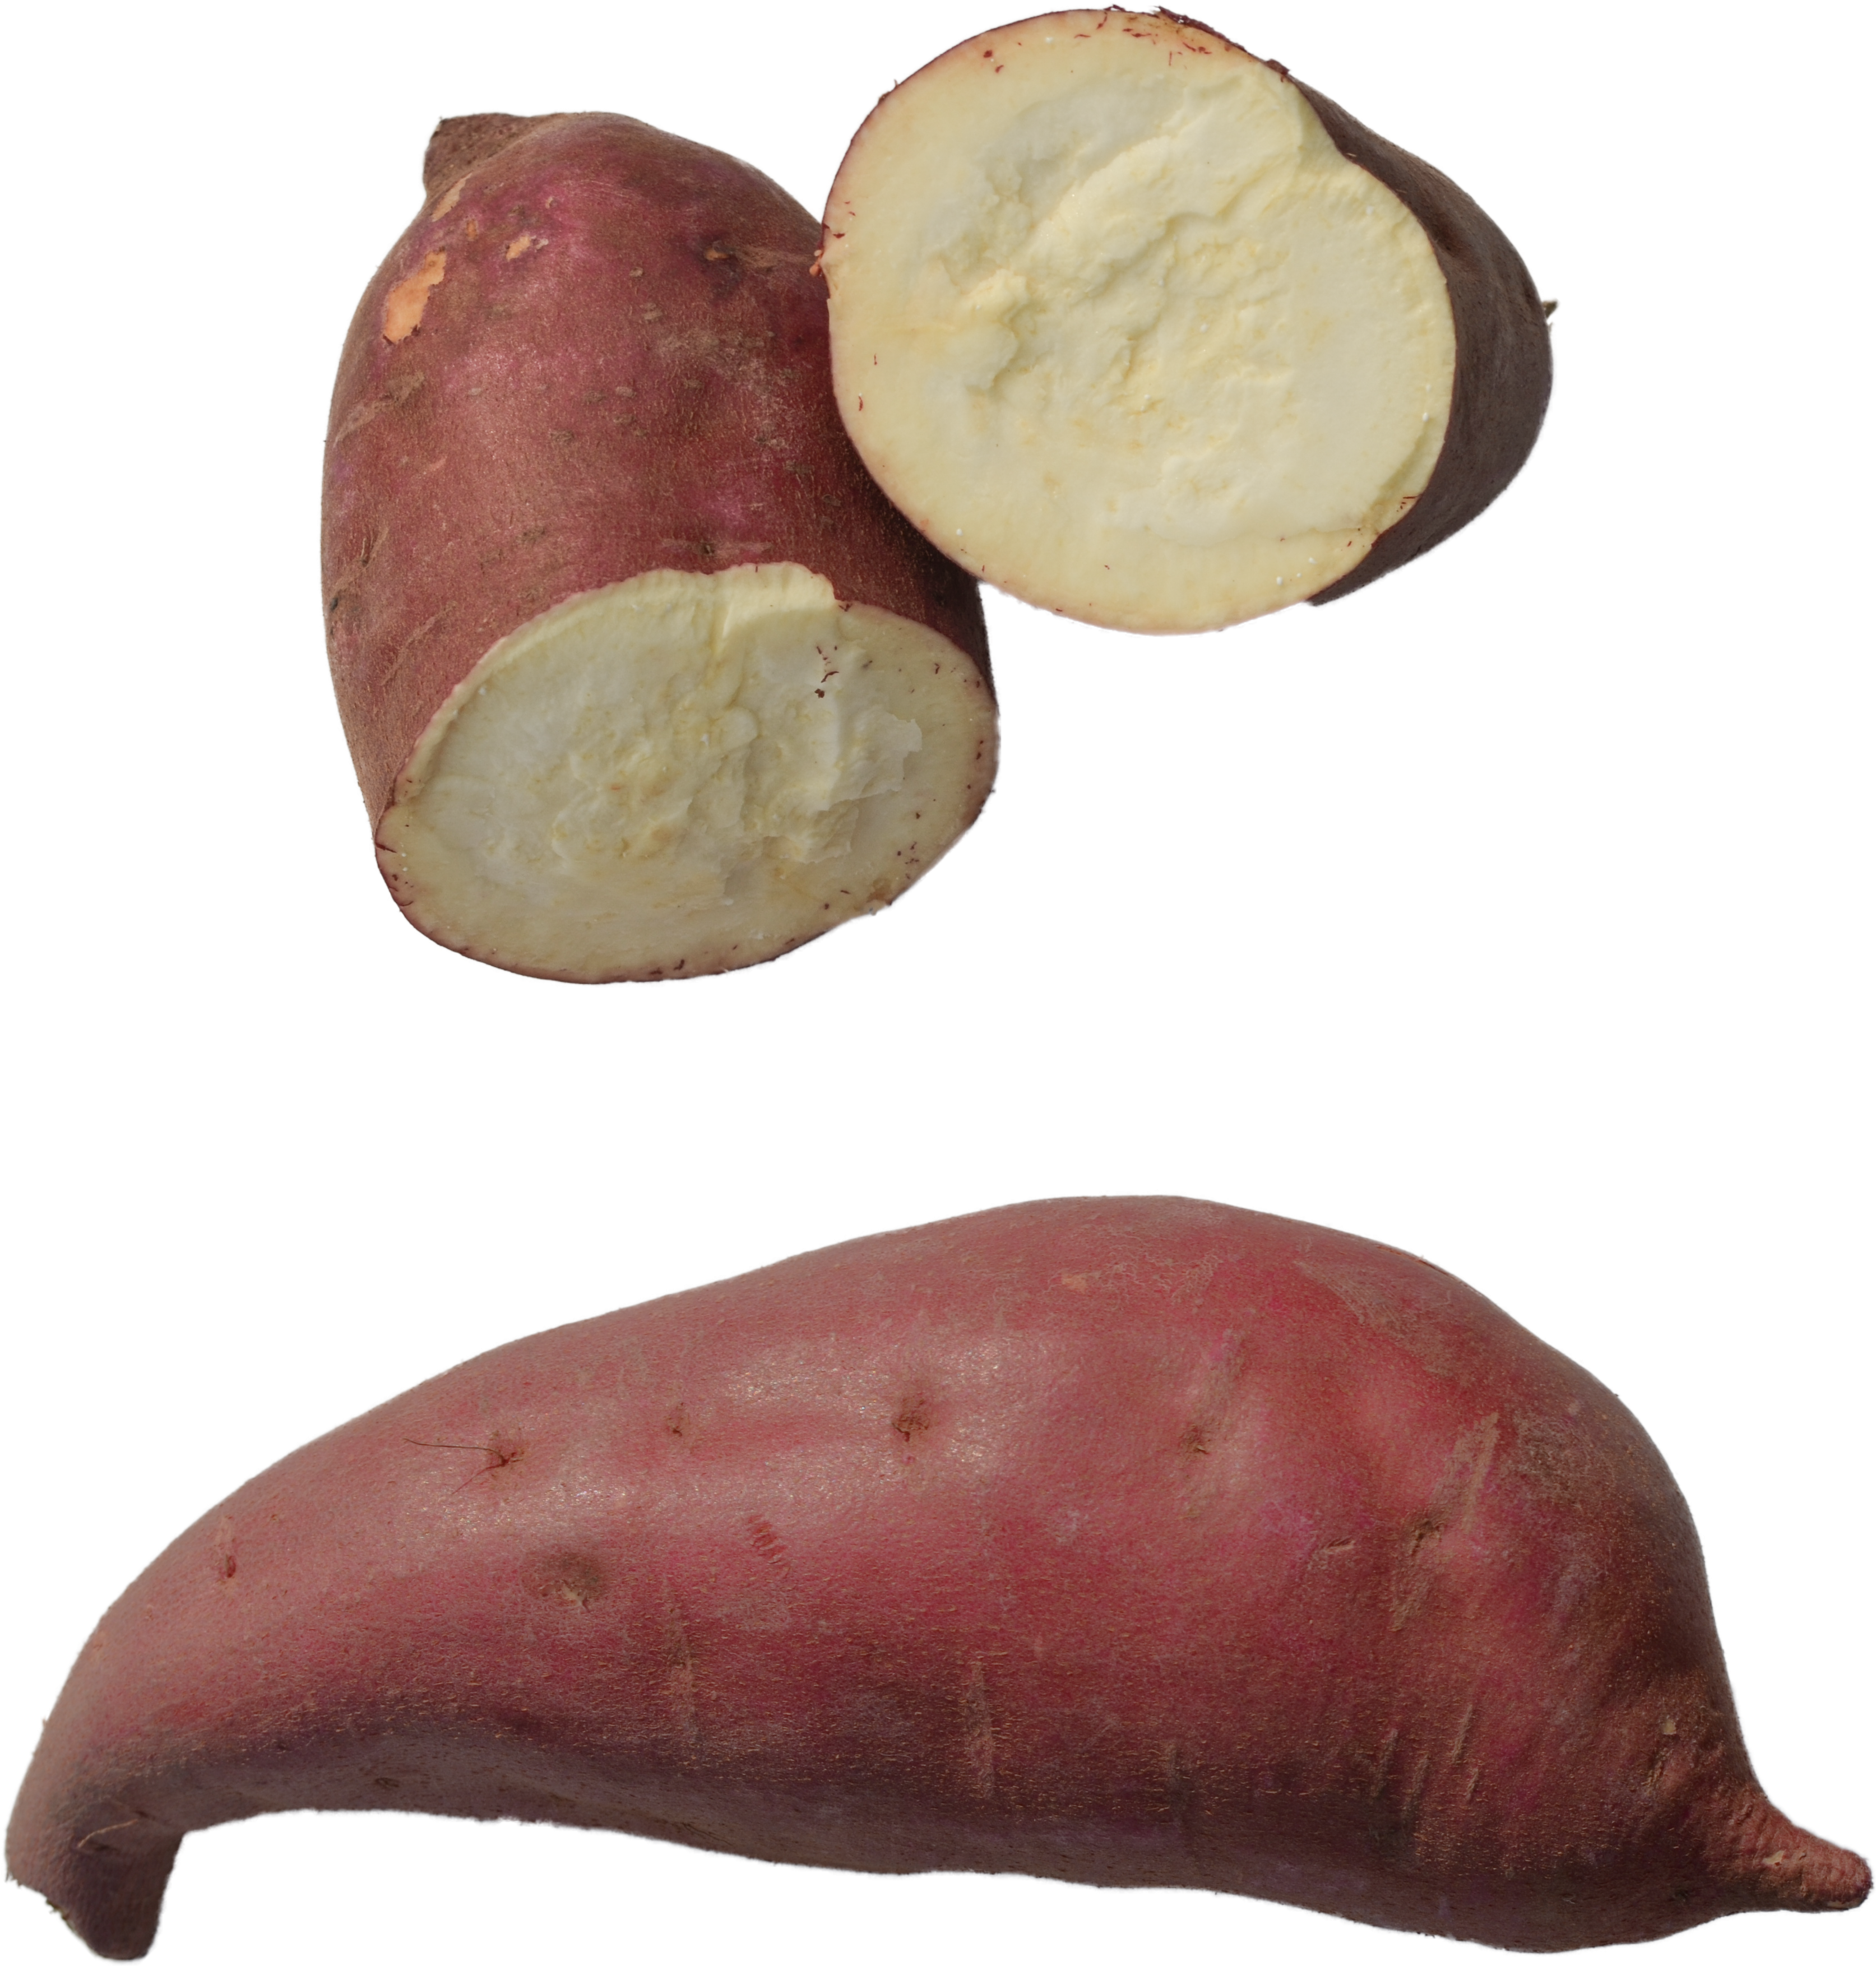 A Close Up Of A Sweet Potato